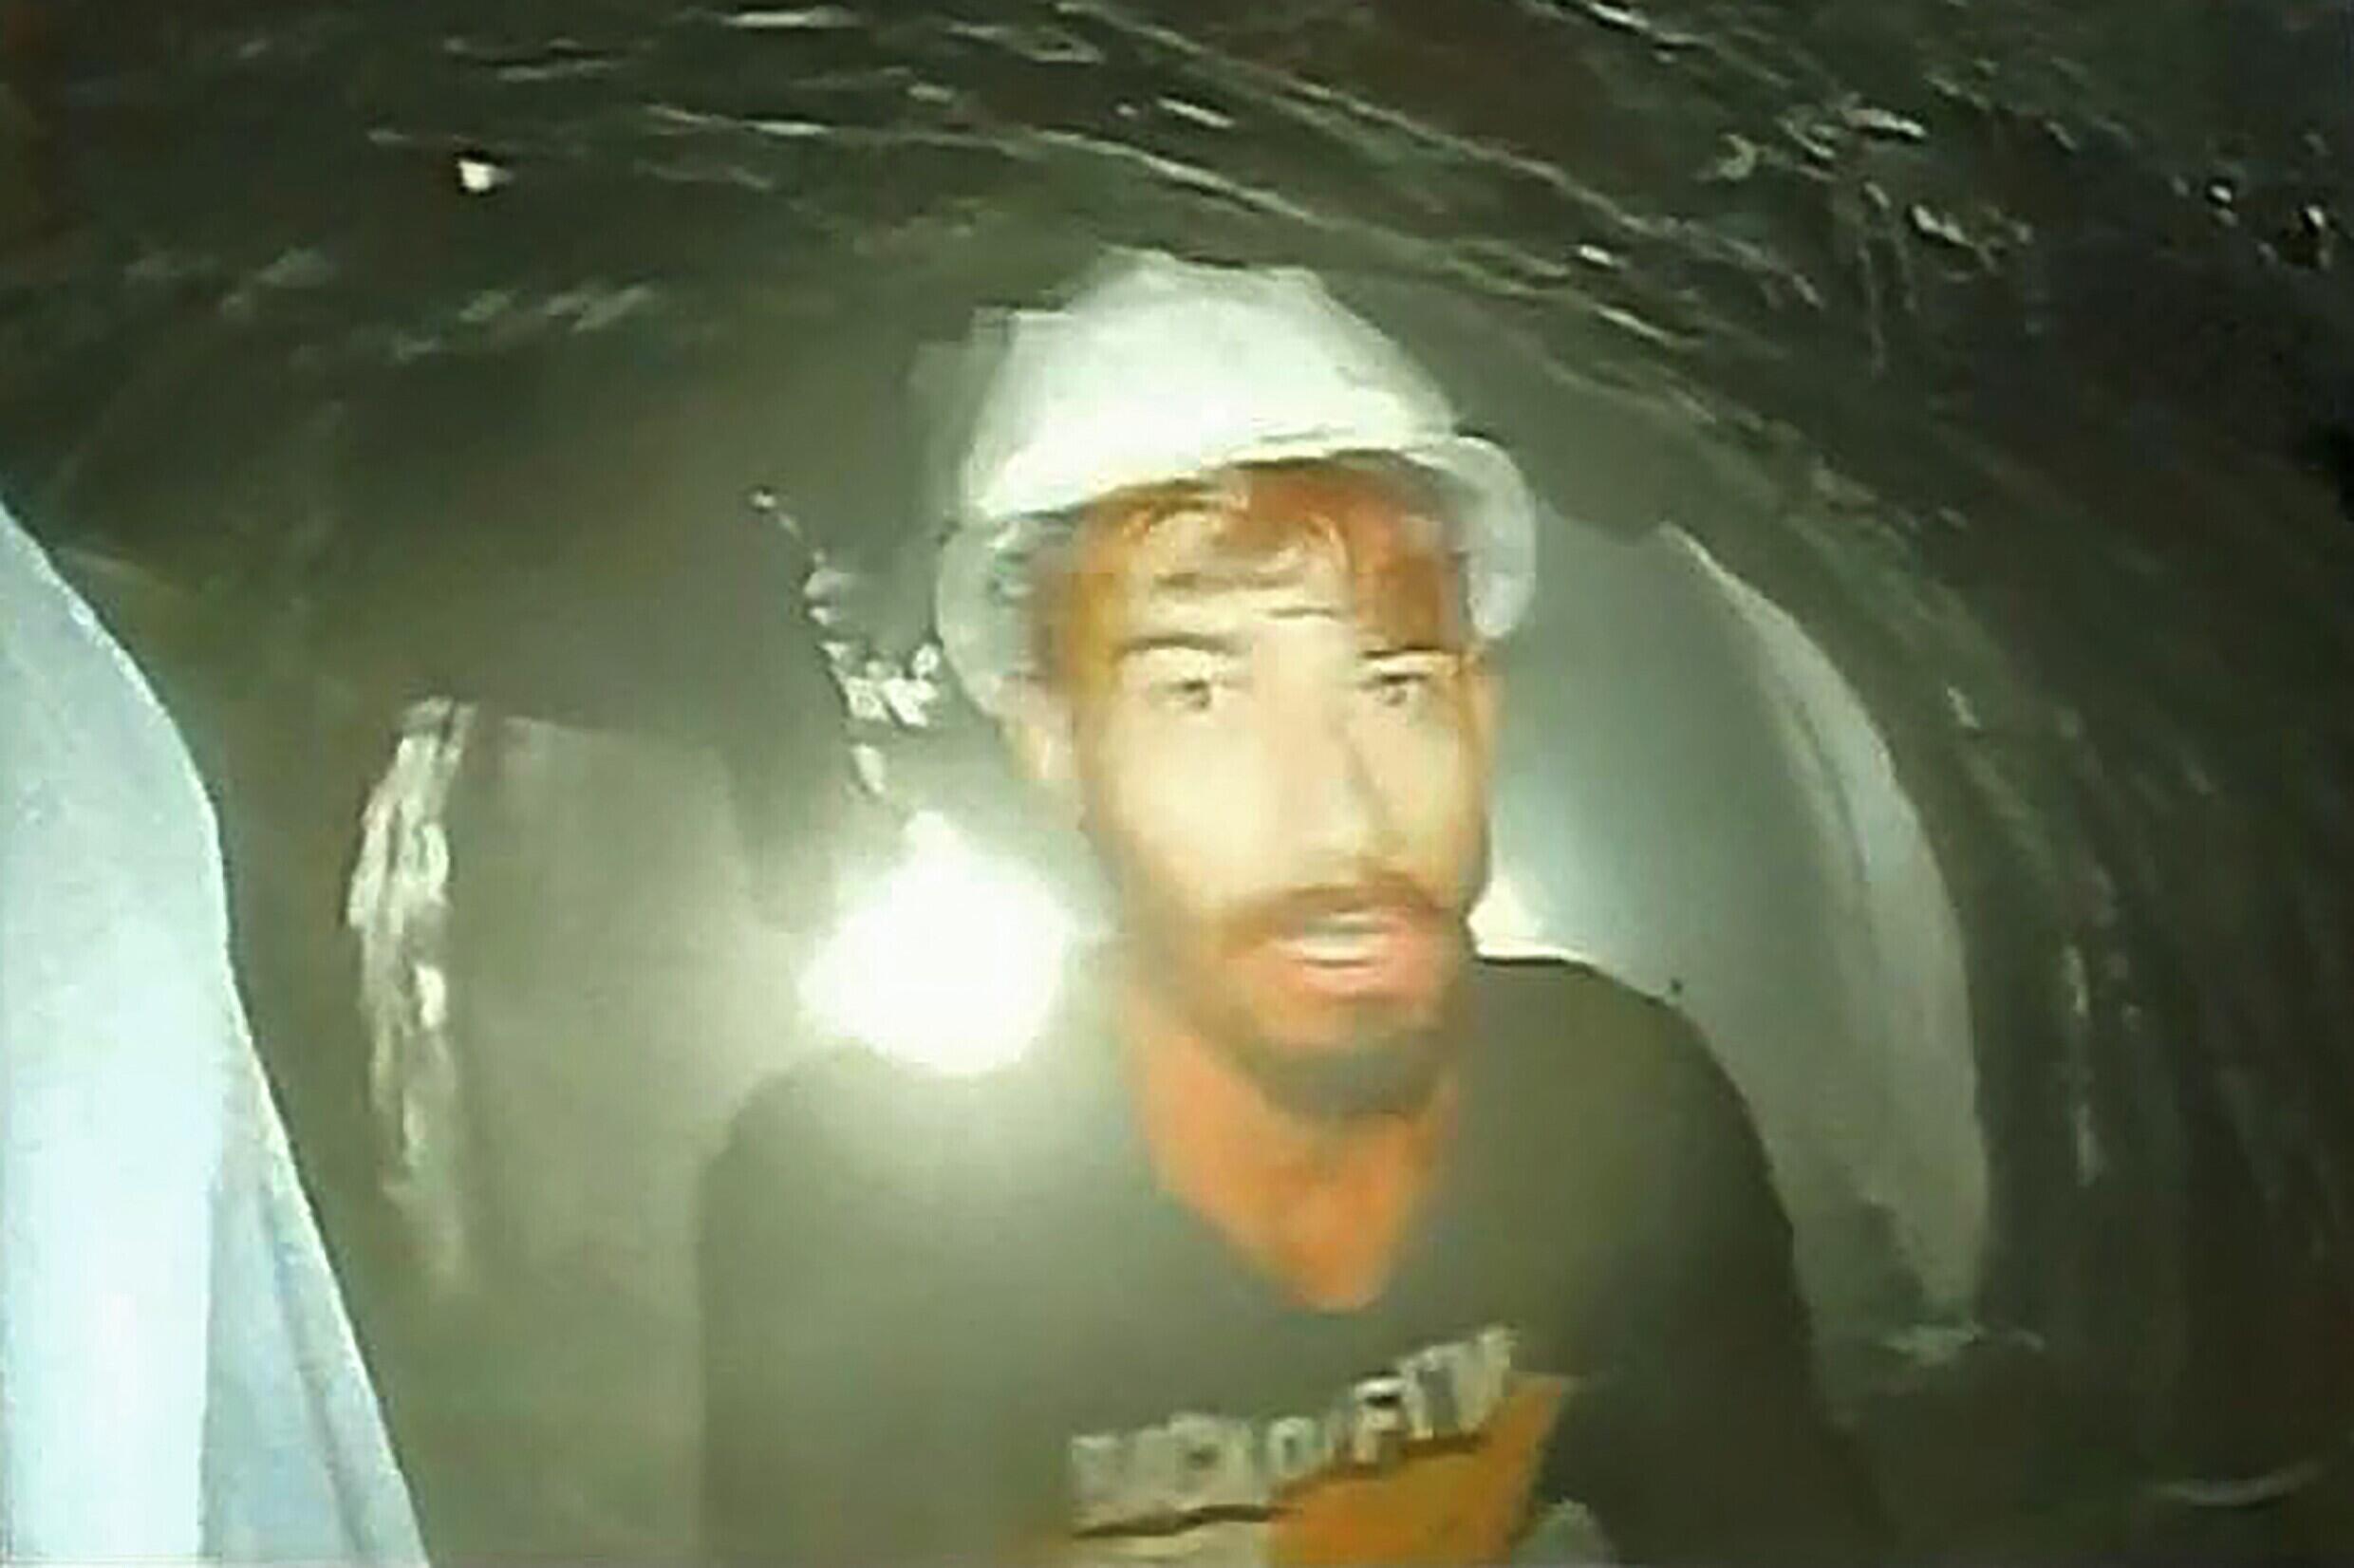 Dieses von der Abteilung für Information und Öffentlichkeitsarbeit (DIPR) von Uttarakhand veröffentlichte Bild zeigt einen Arbeiter, der im im Bau befindlichen Tunnel eingeschlossen ist.